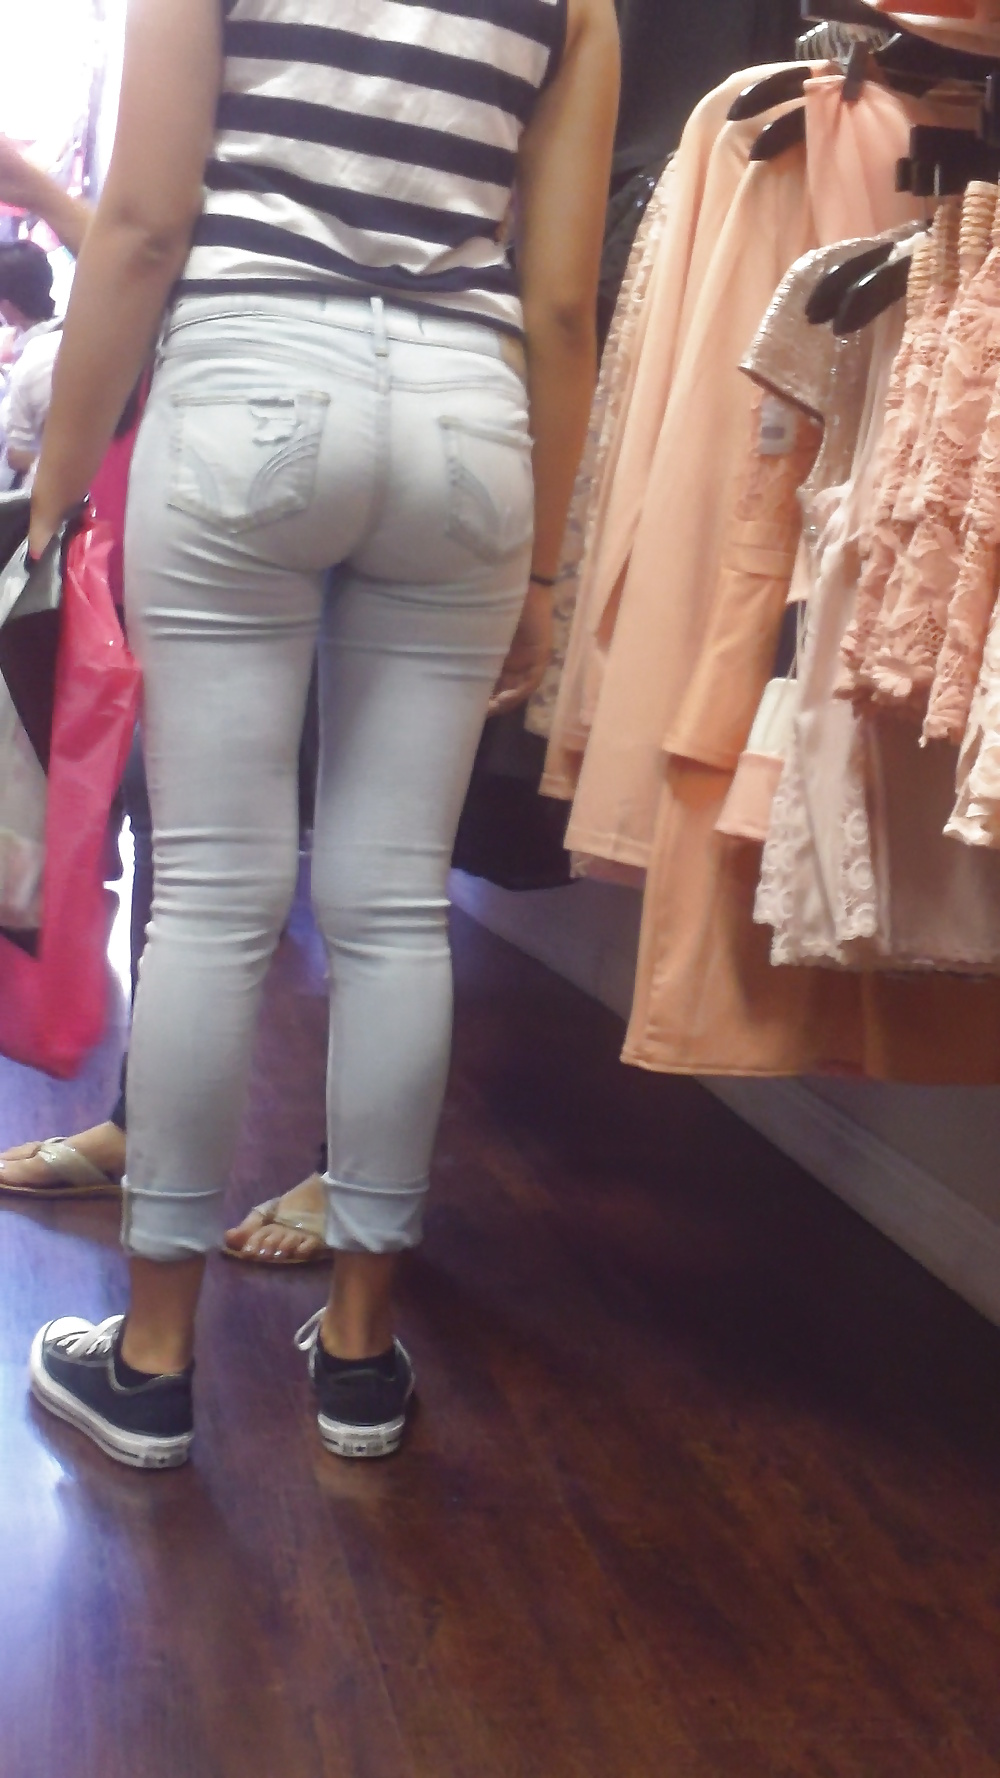 Popular teen girls ass & butt in jeans part 4  #26743531